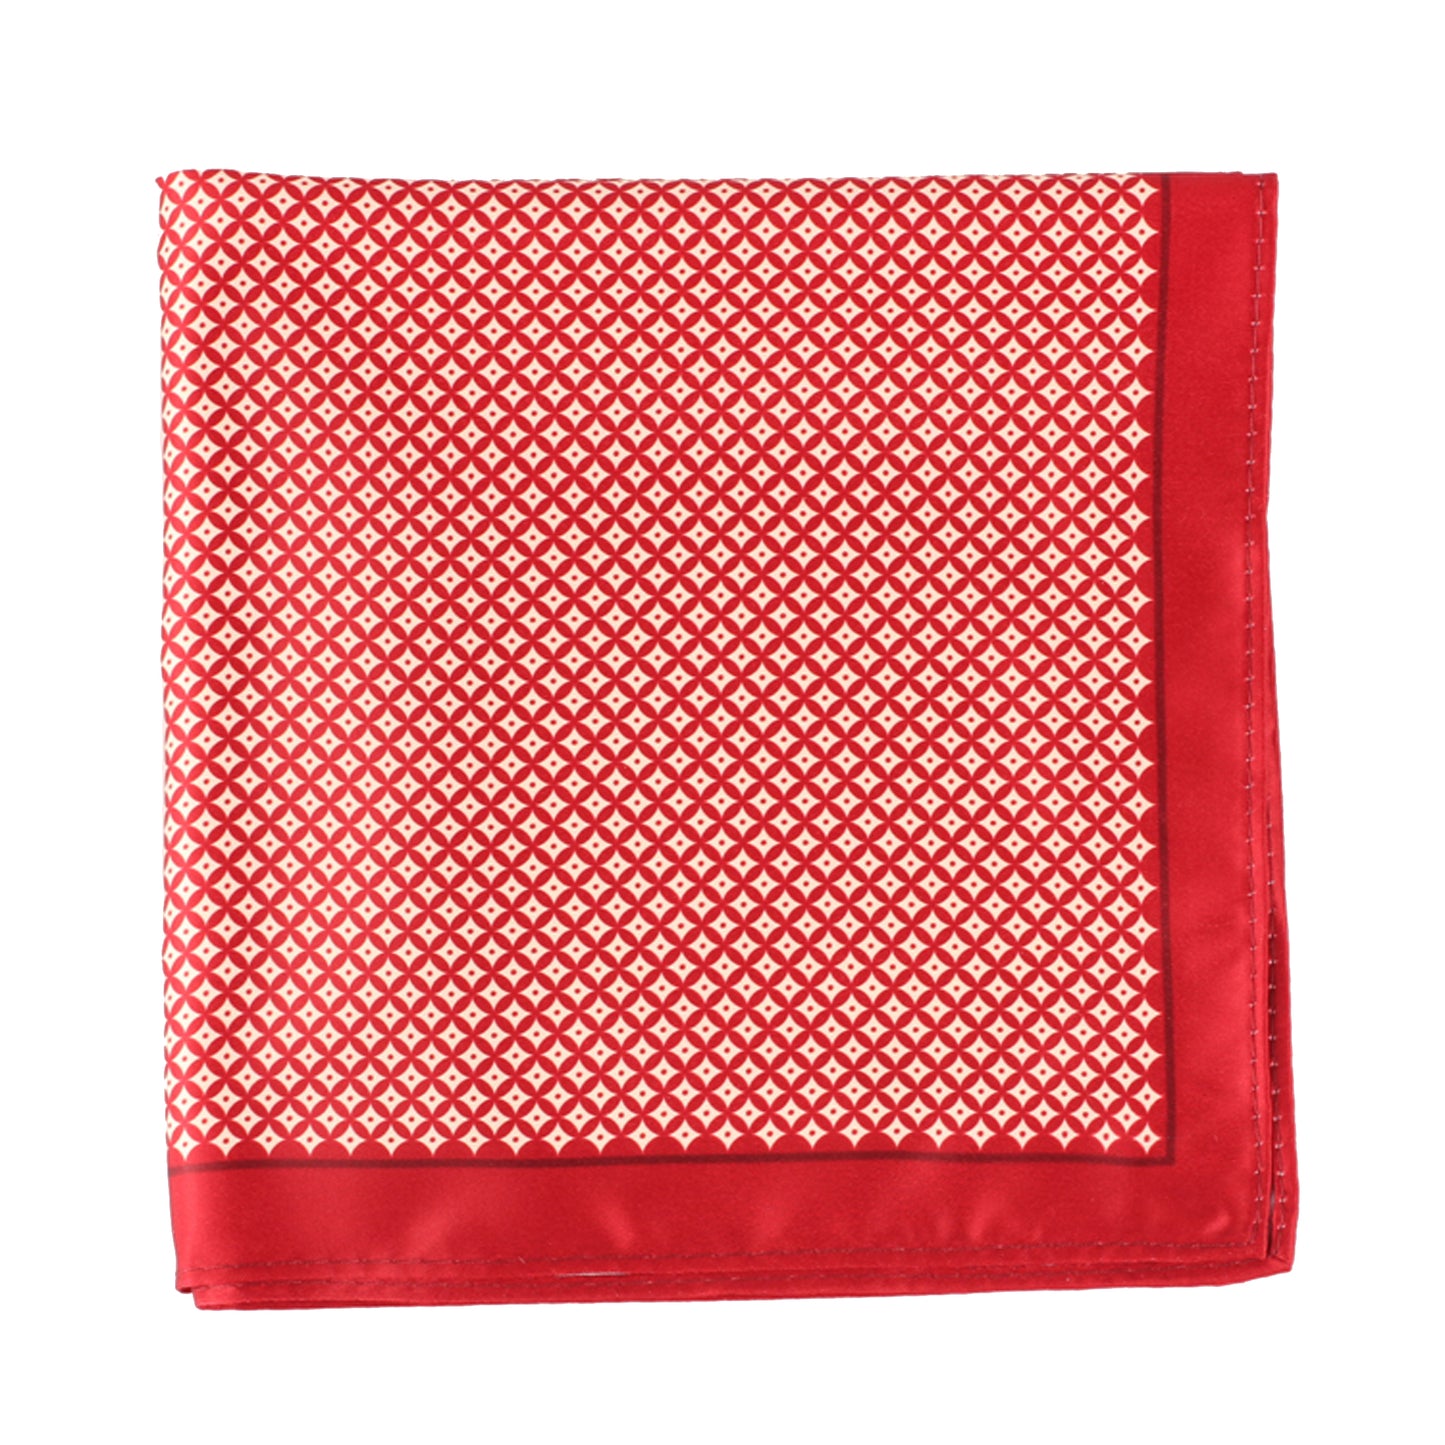 Red/Ivory Geometric Pocket Square + SquareGuard